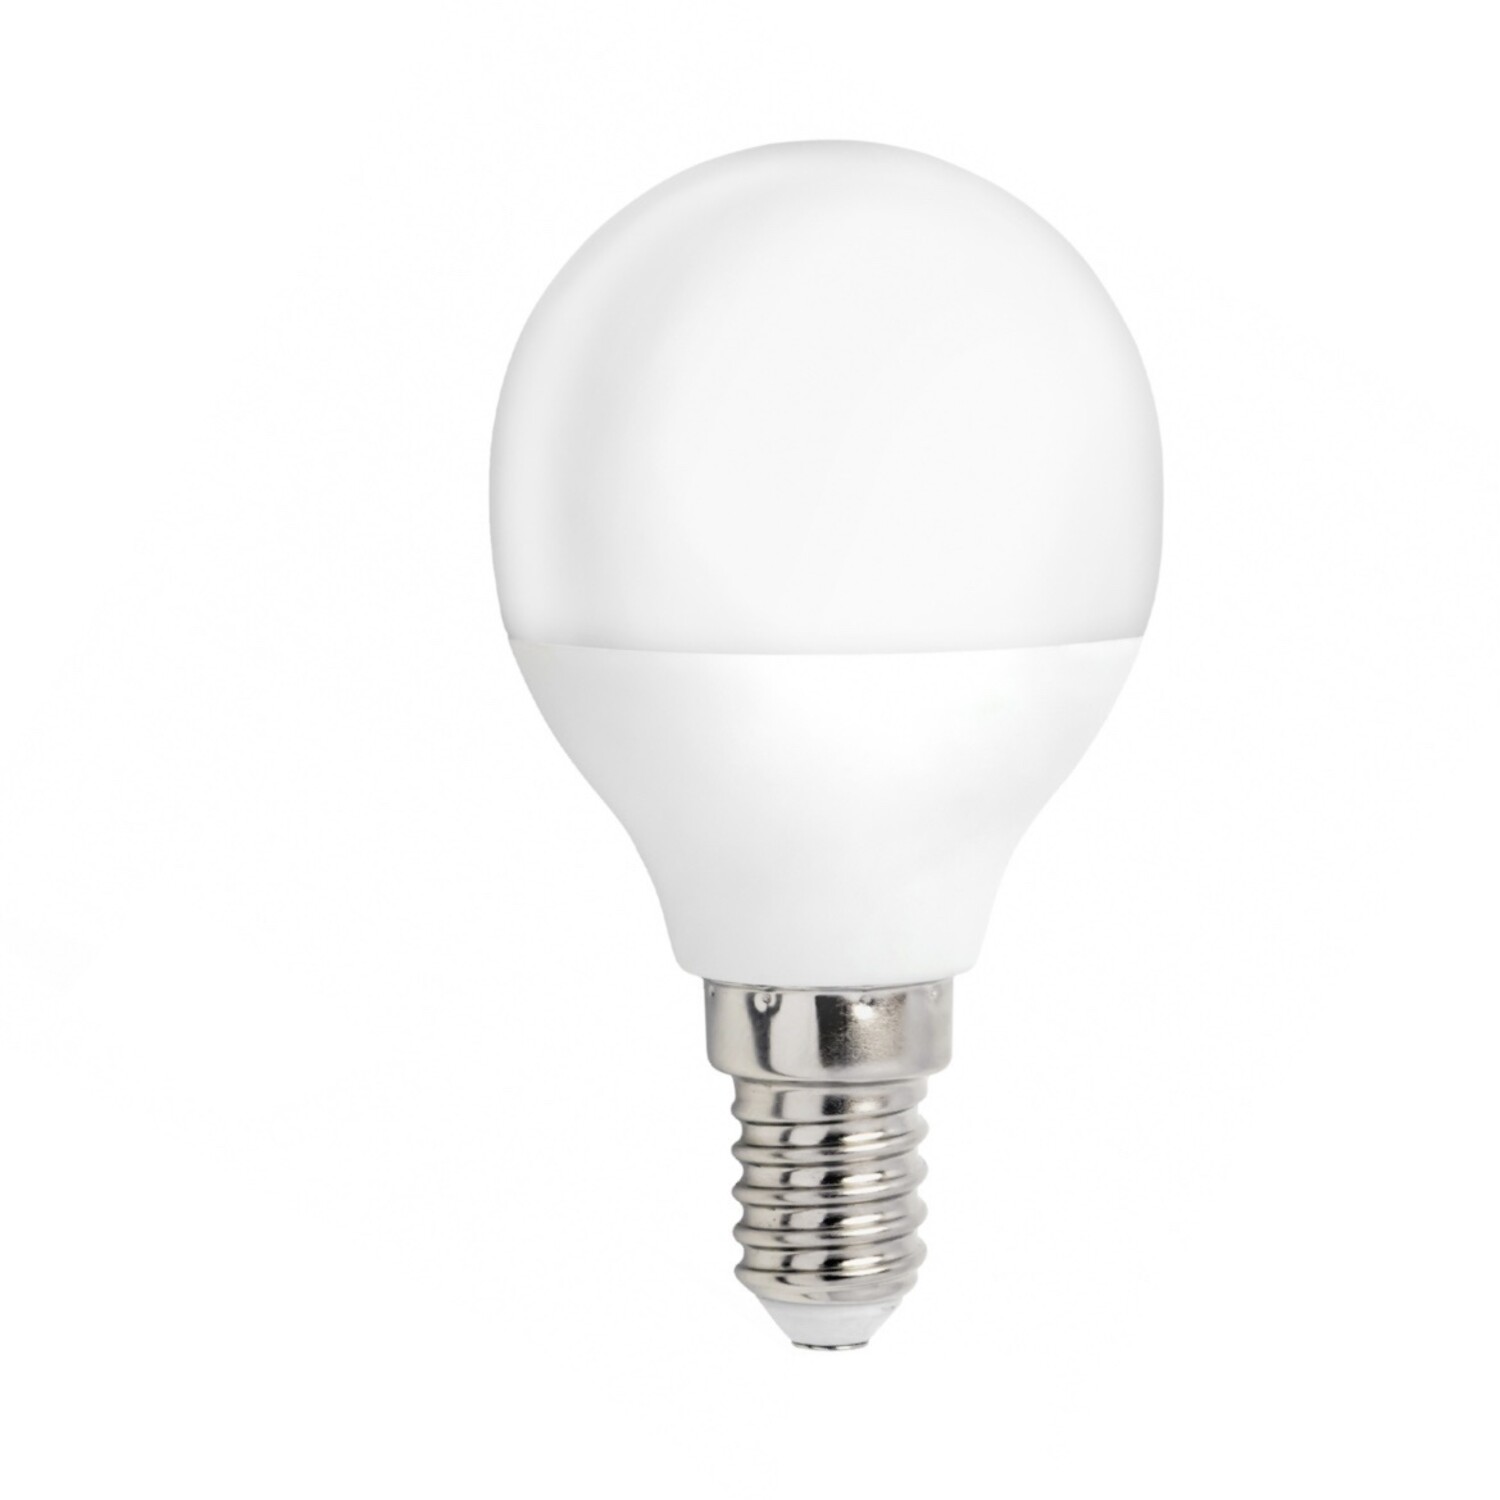 LED E14 Lampe - 3000K 4W Warmweiß entspricht 25W